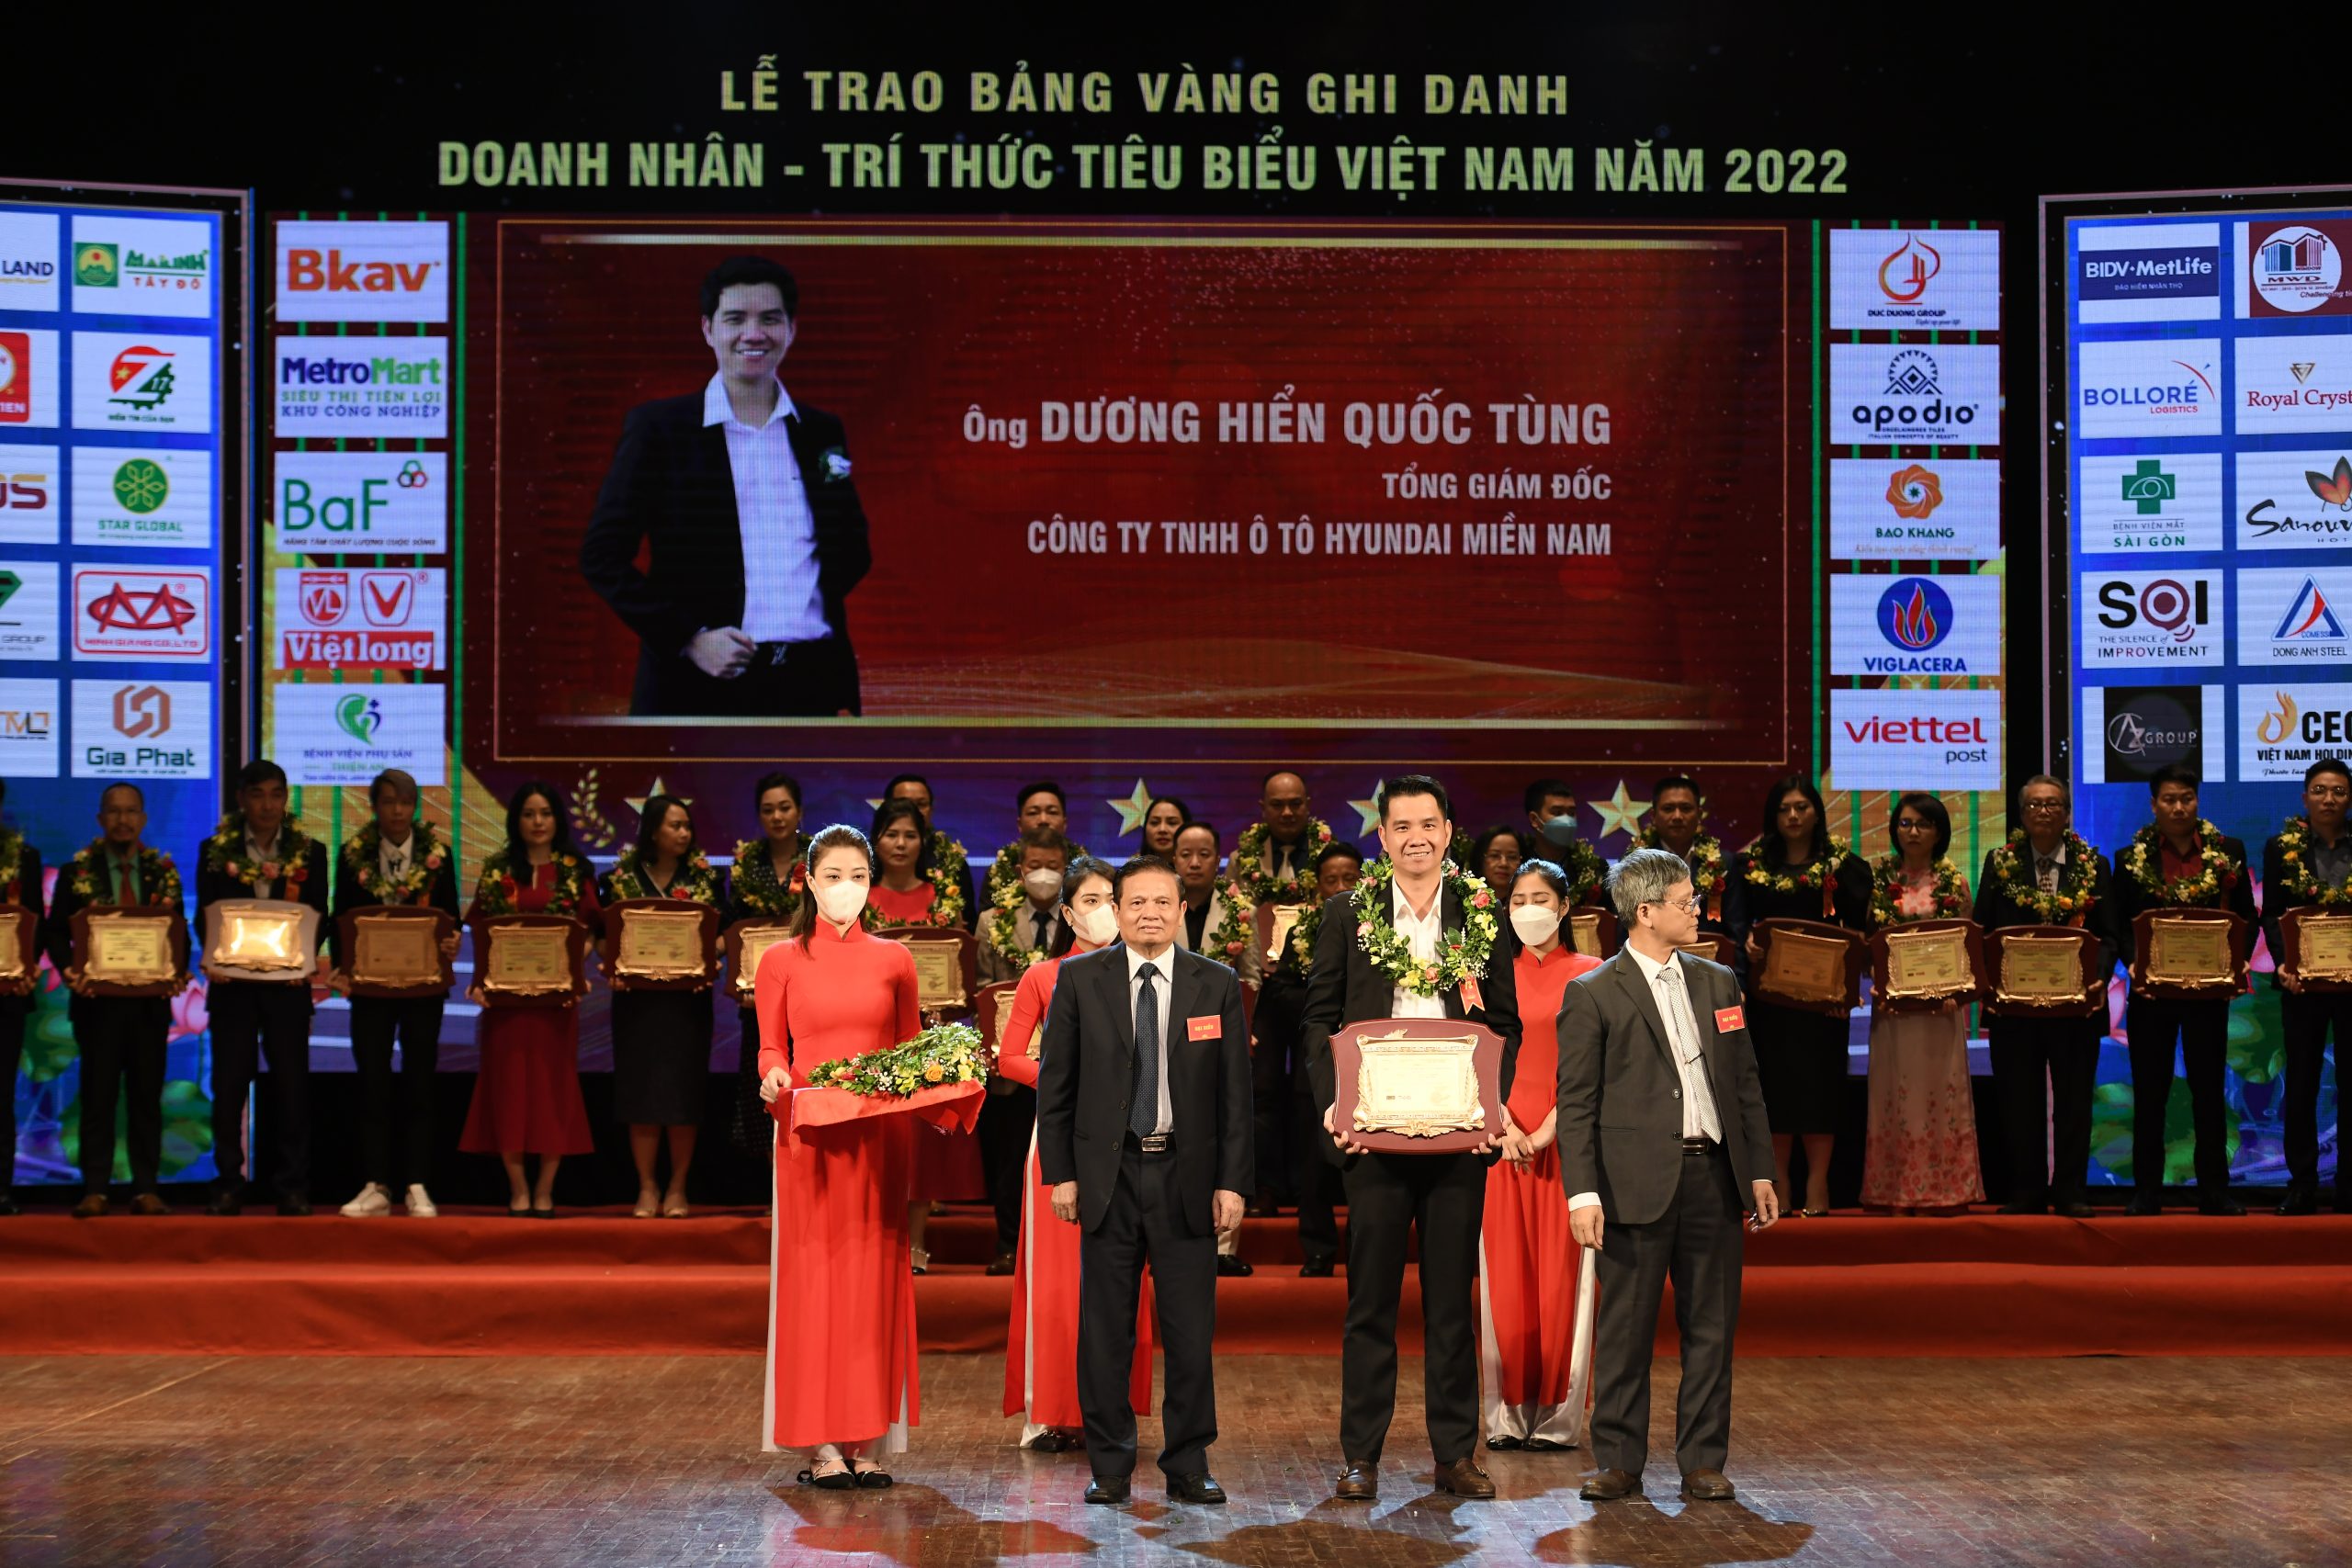 Doanh nhân Dương Hiển Quốc Tùng - Tổng Giám Đốc Hyundai Miền Nam xuất sắc ghi danh bàng vàng "Doanh Nhân Xuất Sắc Năm 2022" trong "Chương Trình Kết Nối Nhân Tài Phát Triển Tài Năng Việt Nam Năm 2022"